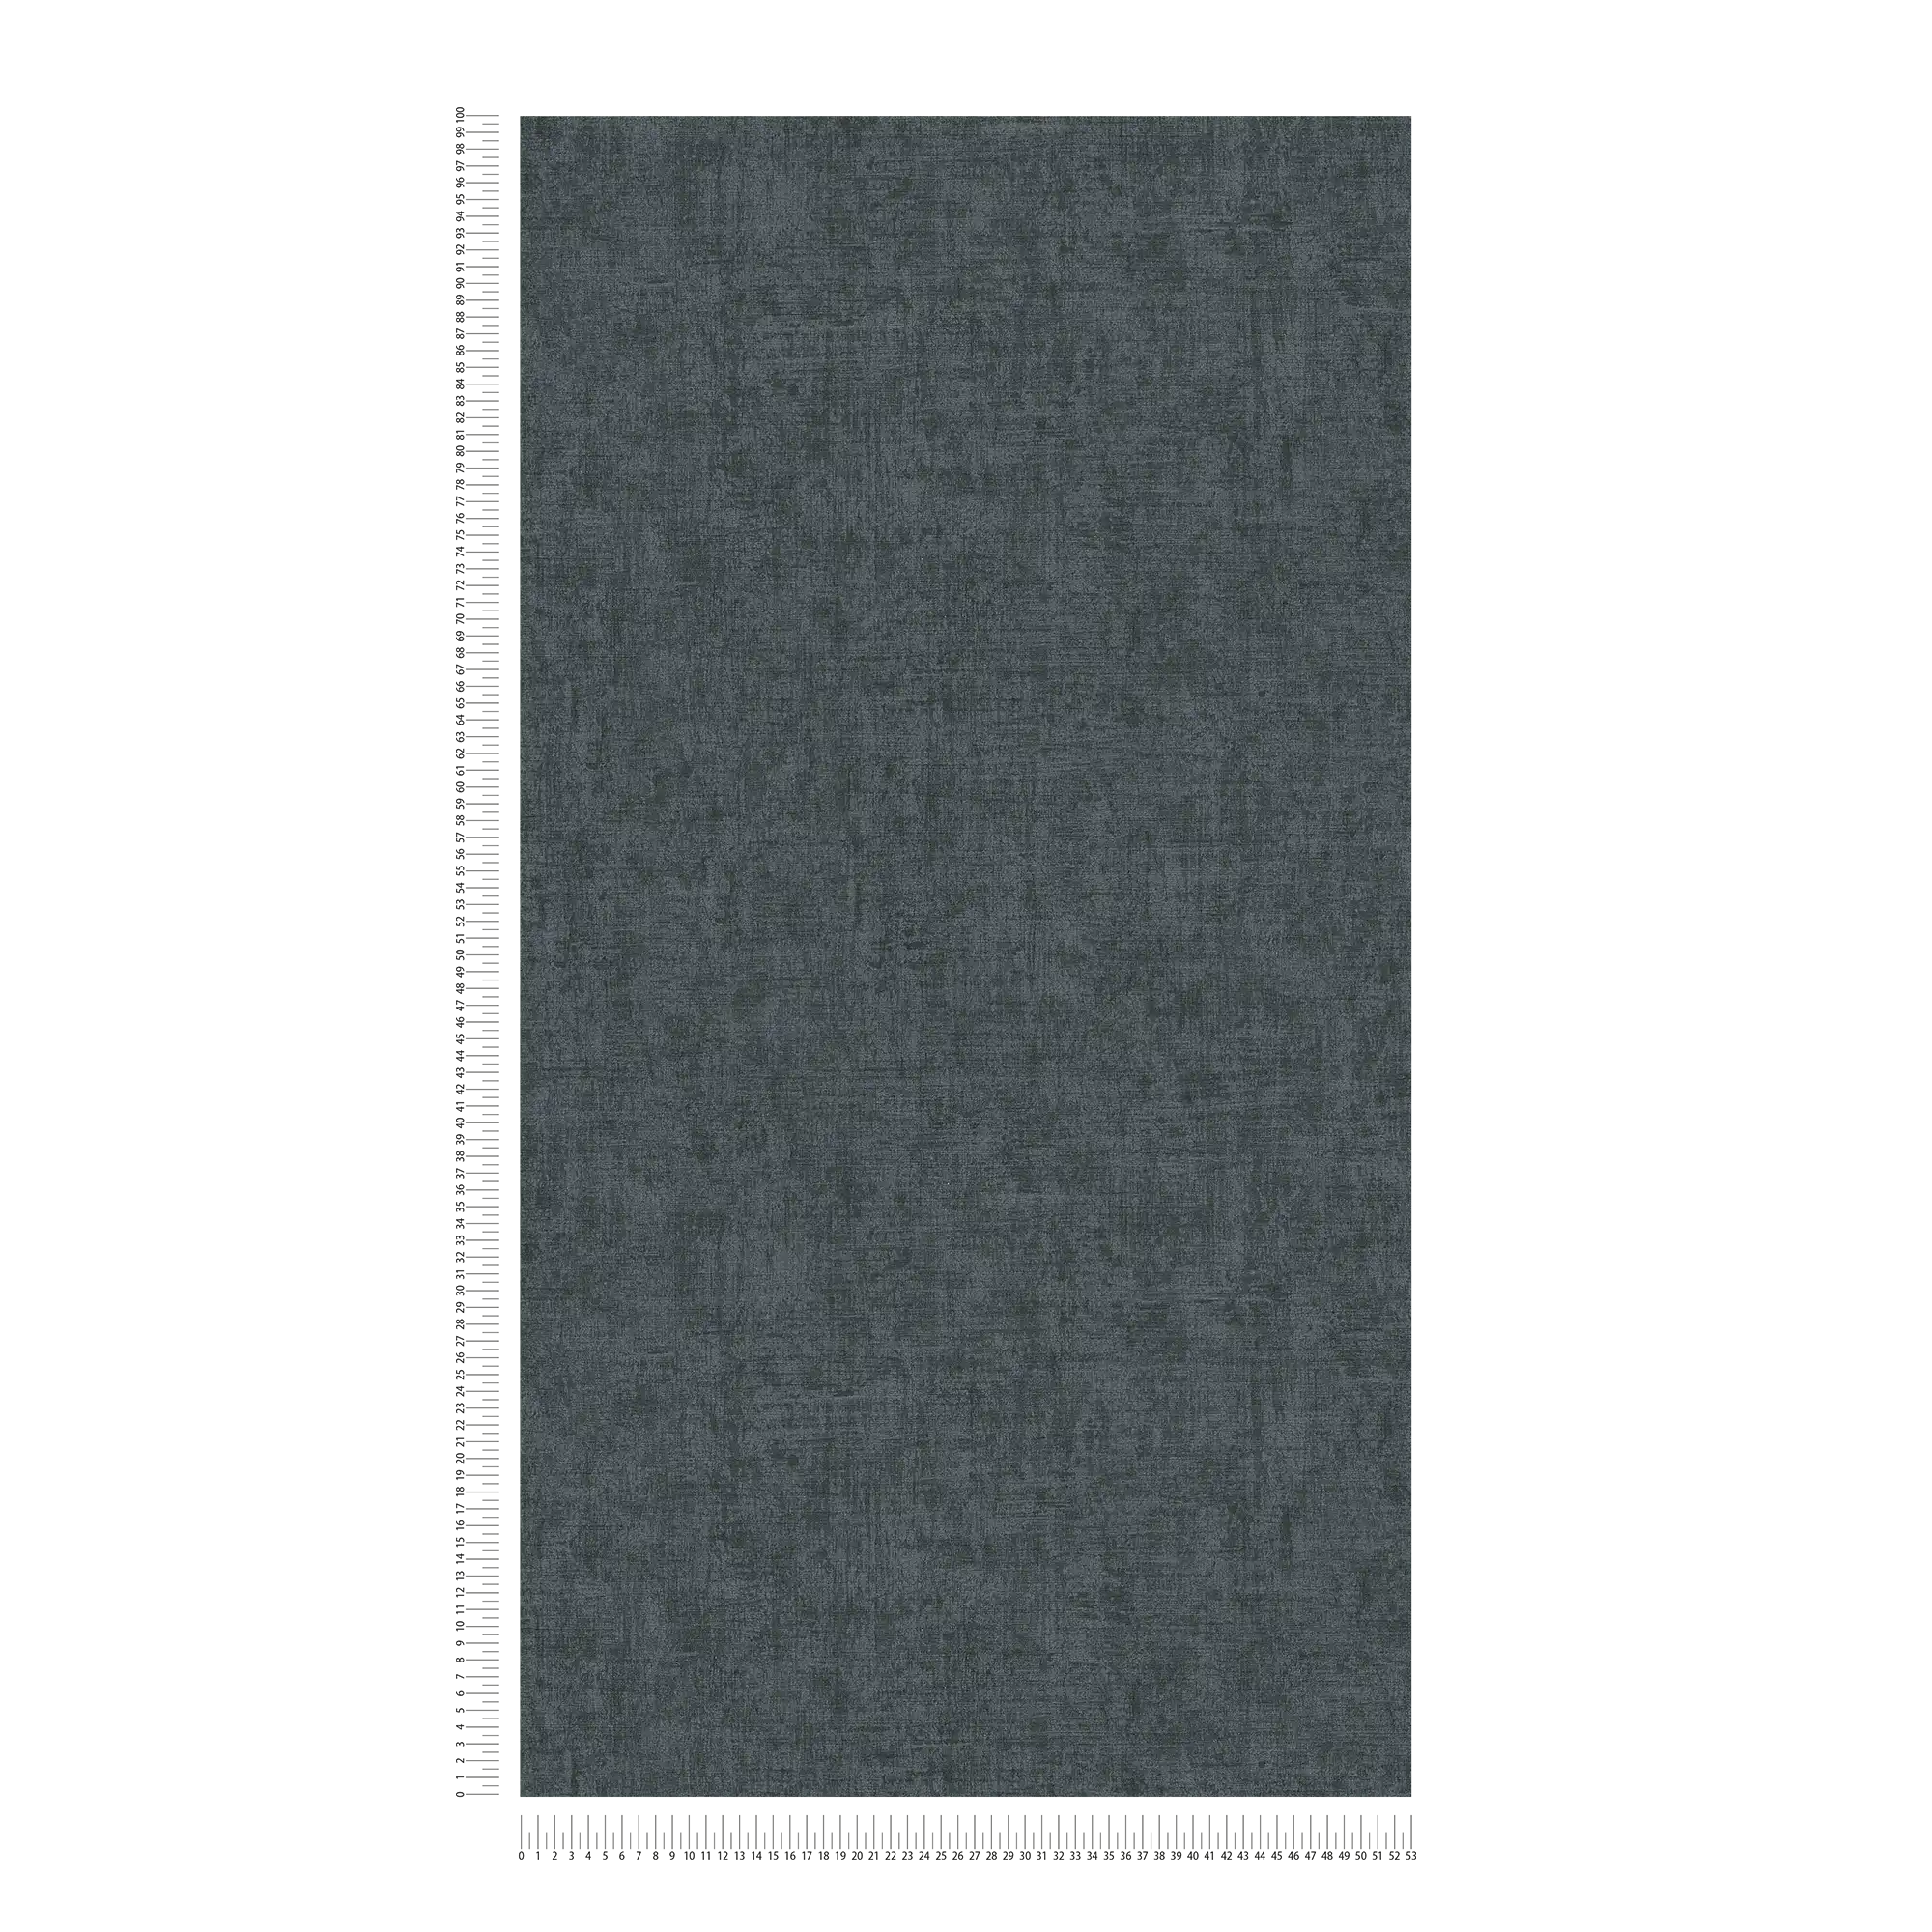             Carta da parati scura con motivi a colori e struttura - grigio, nero
        